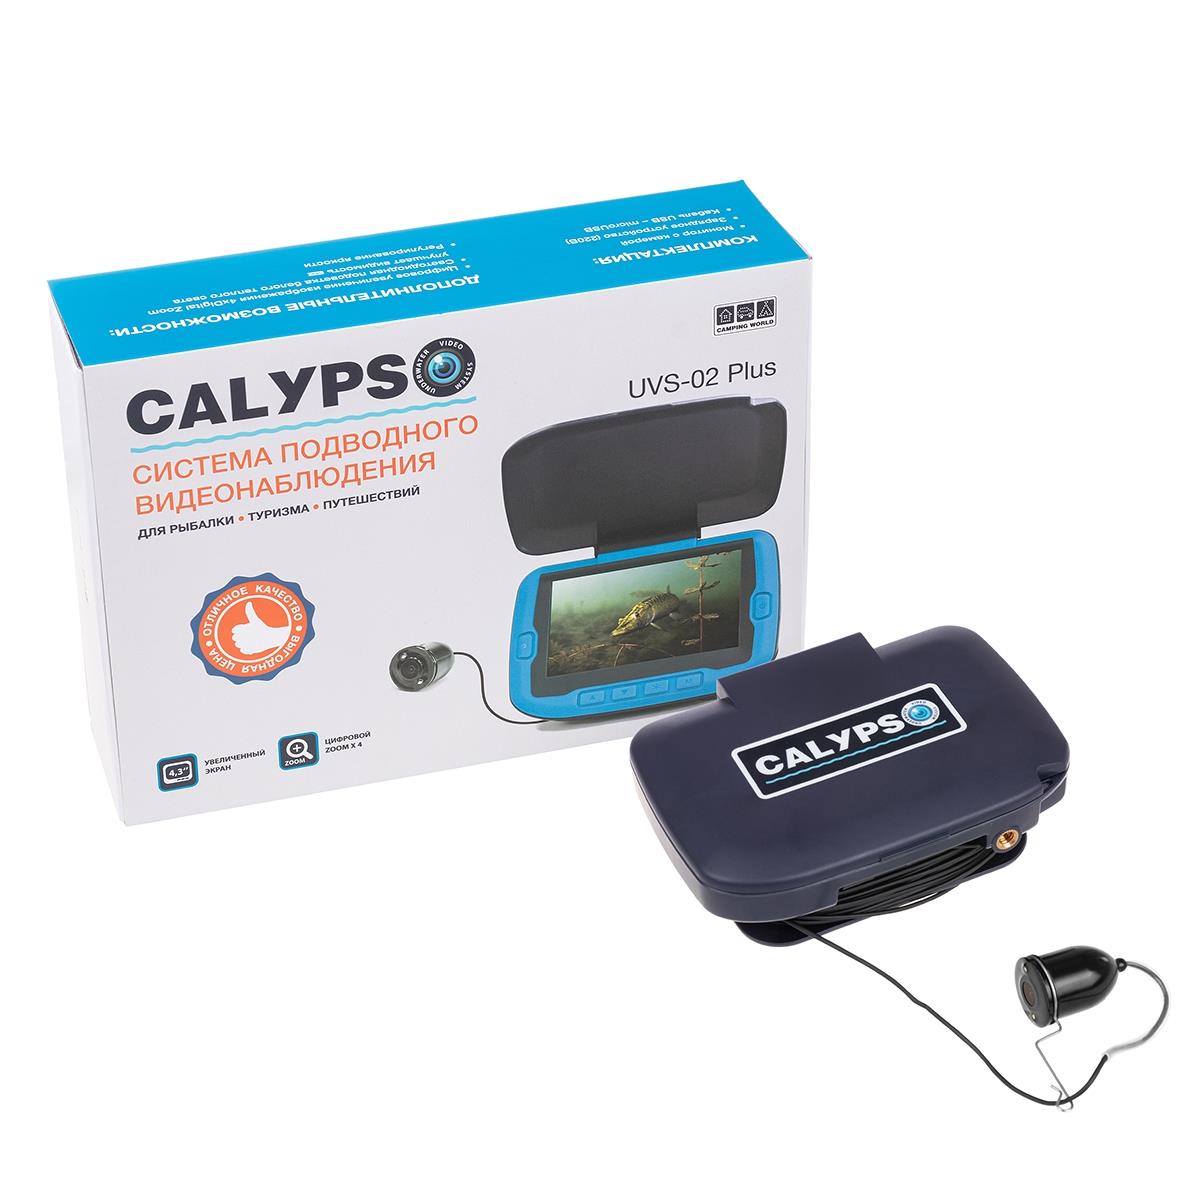 Подводная видеокамера CALYPSO UVS-02 PLUS (FDV-1112) подводный мир